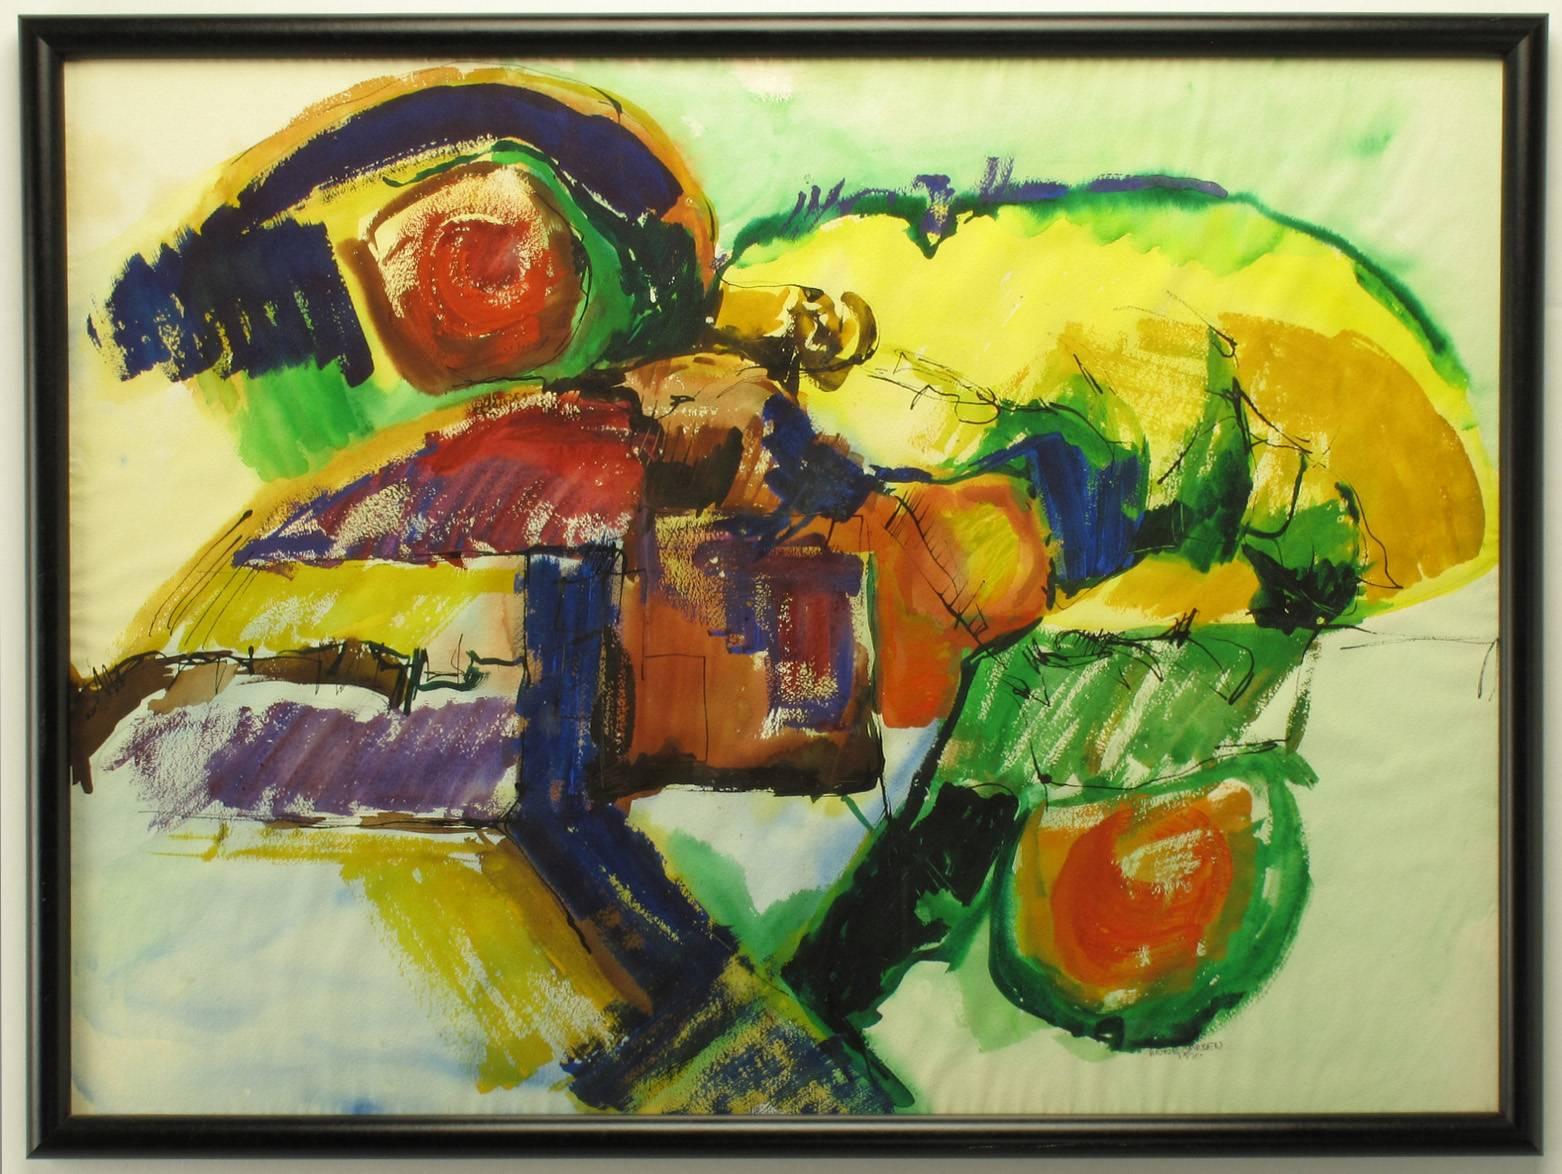 Peinture abstraite mixte sur papier aquarelle d'Anne Jansen, datée de 1970. Palette de couleurs principalement primaires en bleu, jaune, vert et rouge. L'ajout d'encre et d'acrylique ajoute de la profondeur à la base de l'aquarelle. Le cadre est en